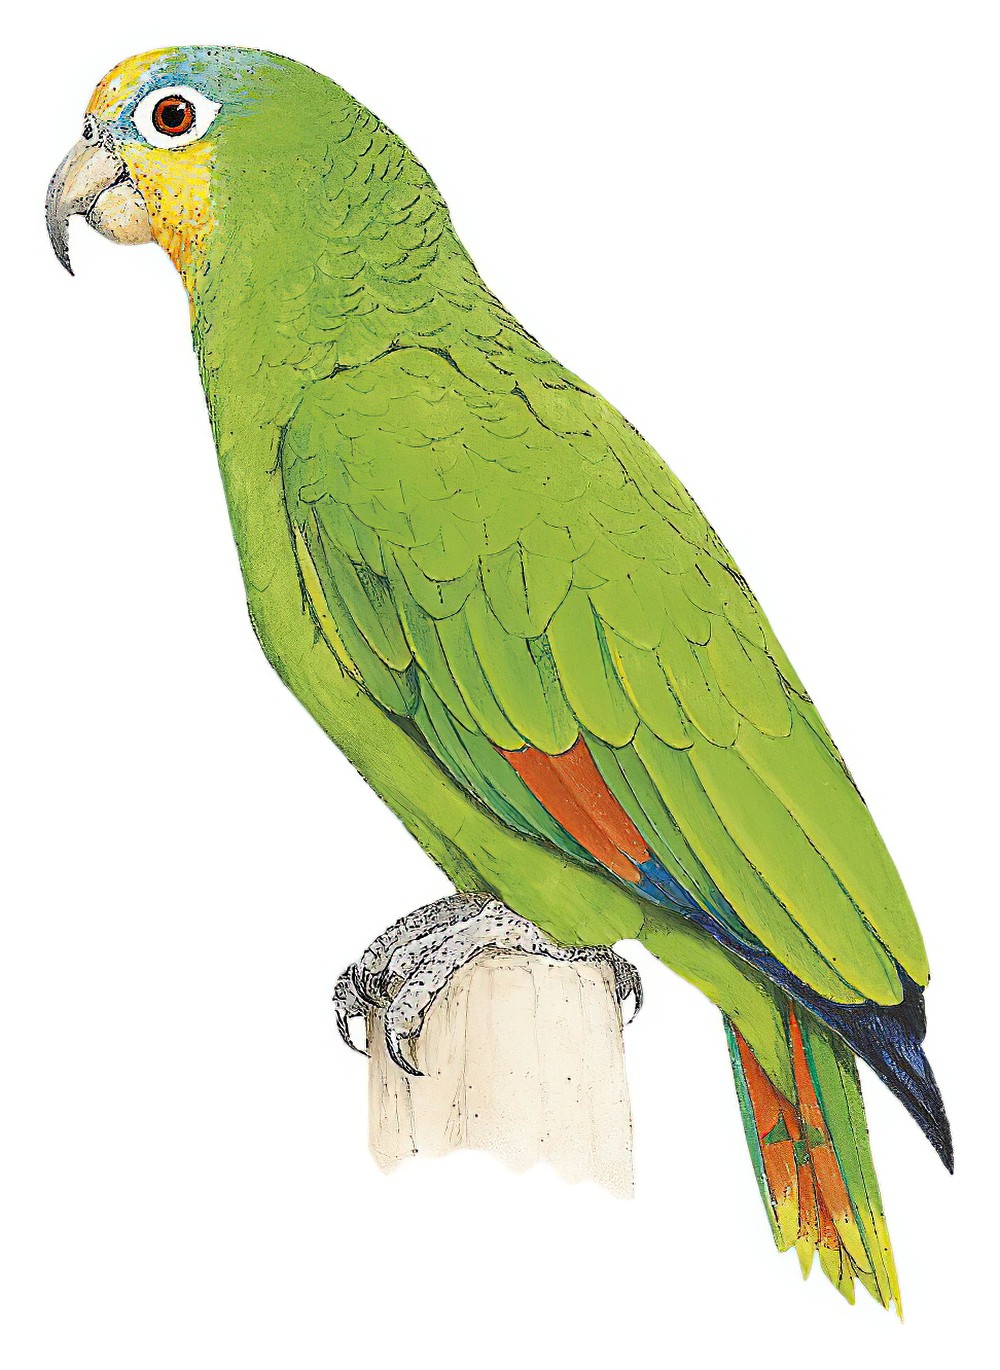 Orange-winged Parrot / Amazona amazonica